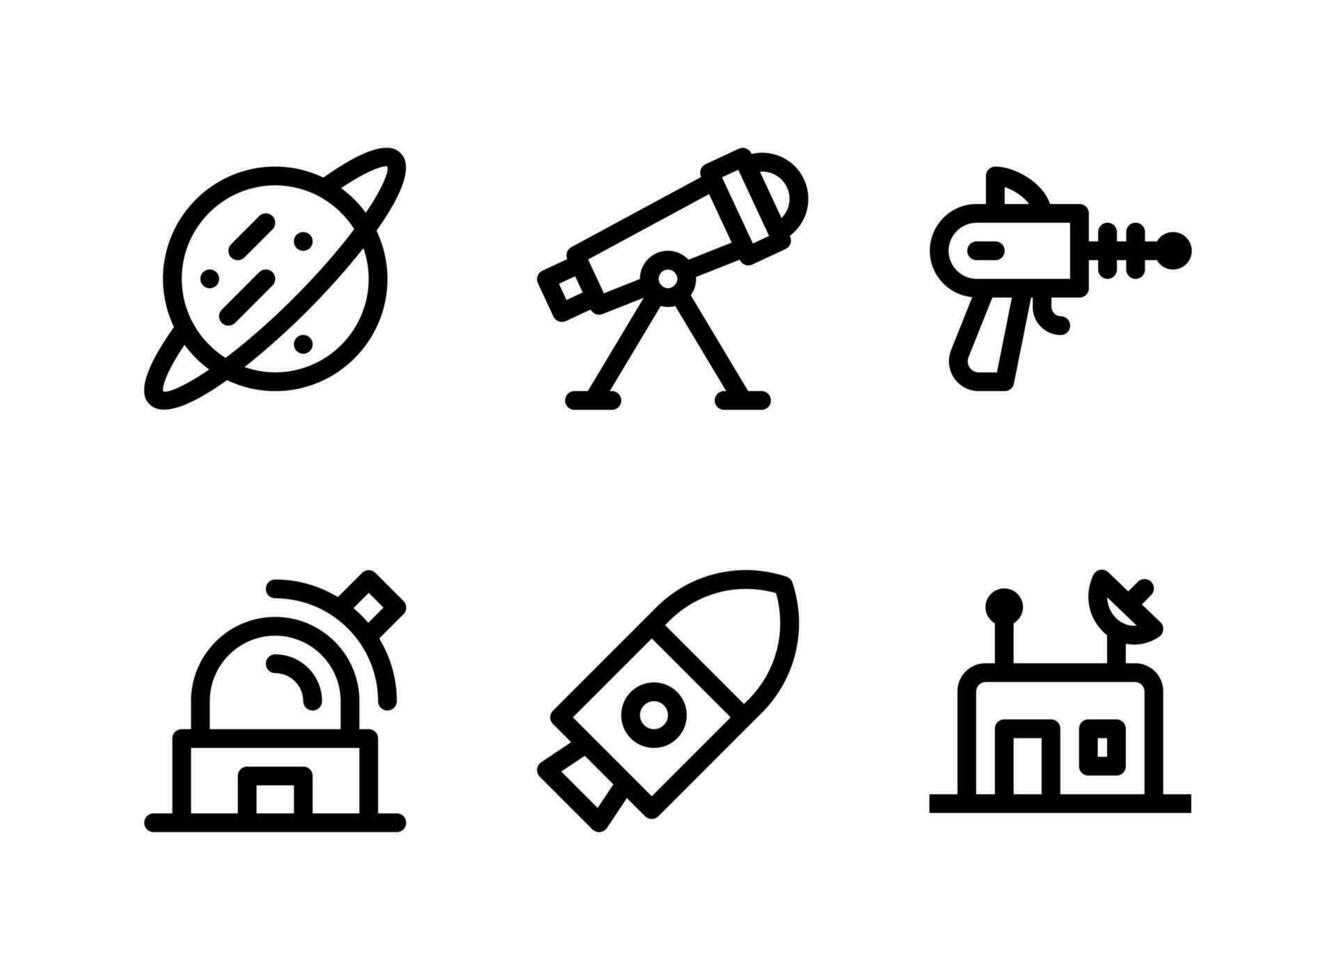 ensemble simple d'icônes de lignes vectorielles liées à l'espace. contient des icônes comme un vaisseau spatial, une planète, un abri, un observatoire spatial et plus encore. vecteur